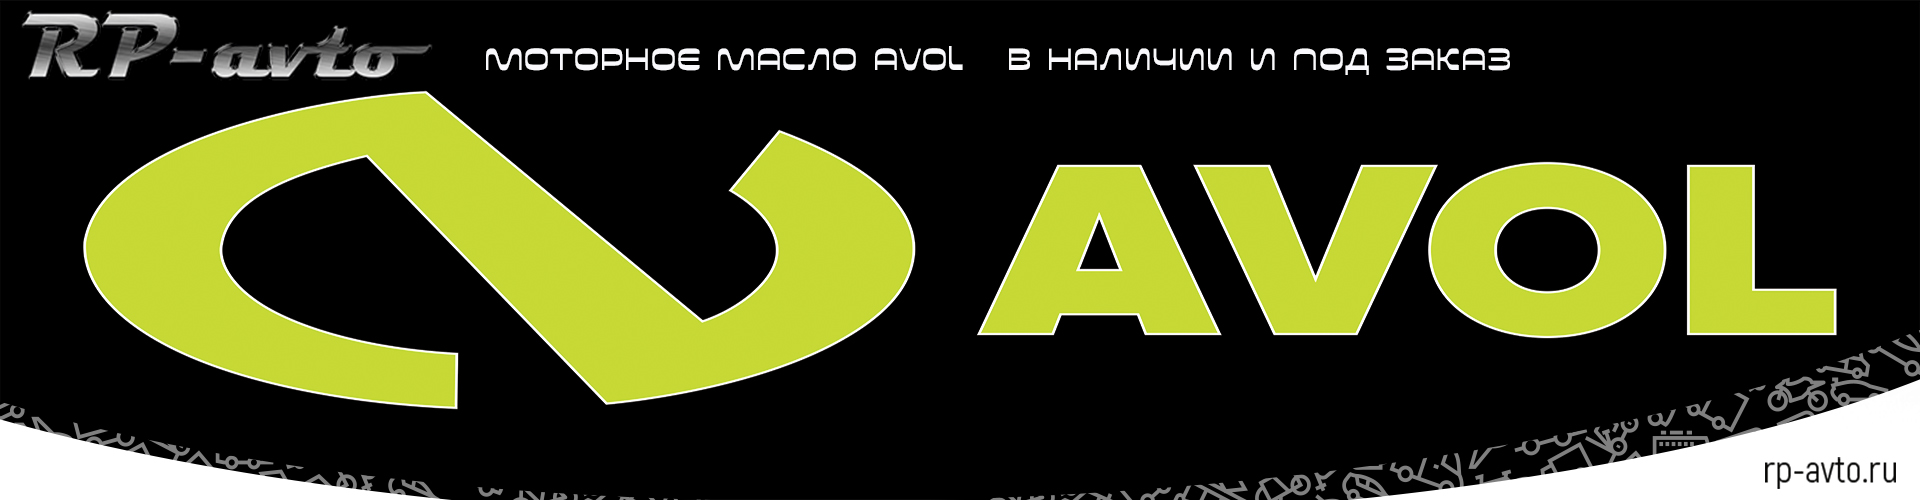 Моторное масло AVOL в наличии и под заказ в интернет магазине RP-Avto